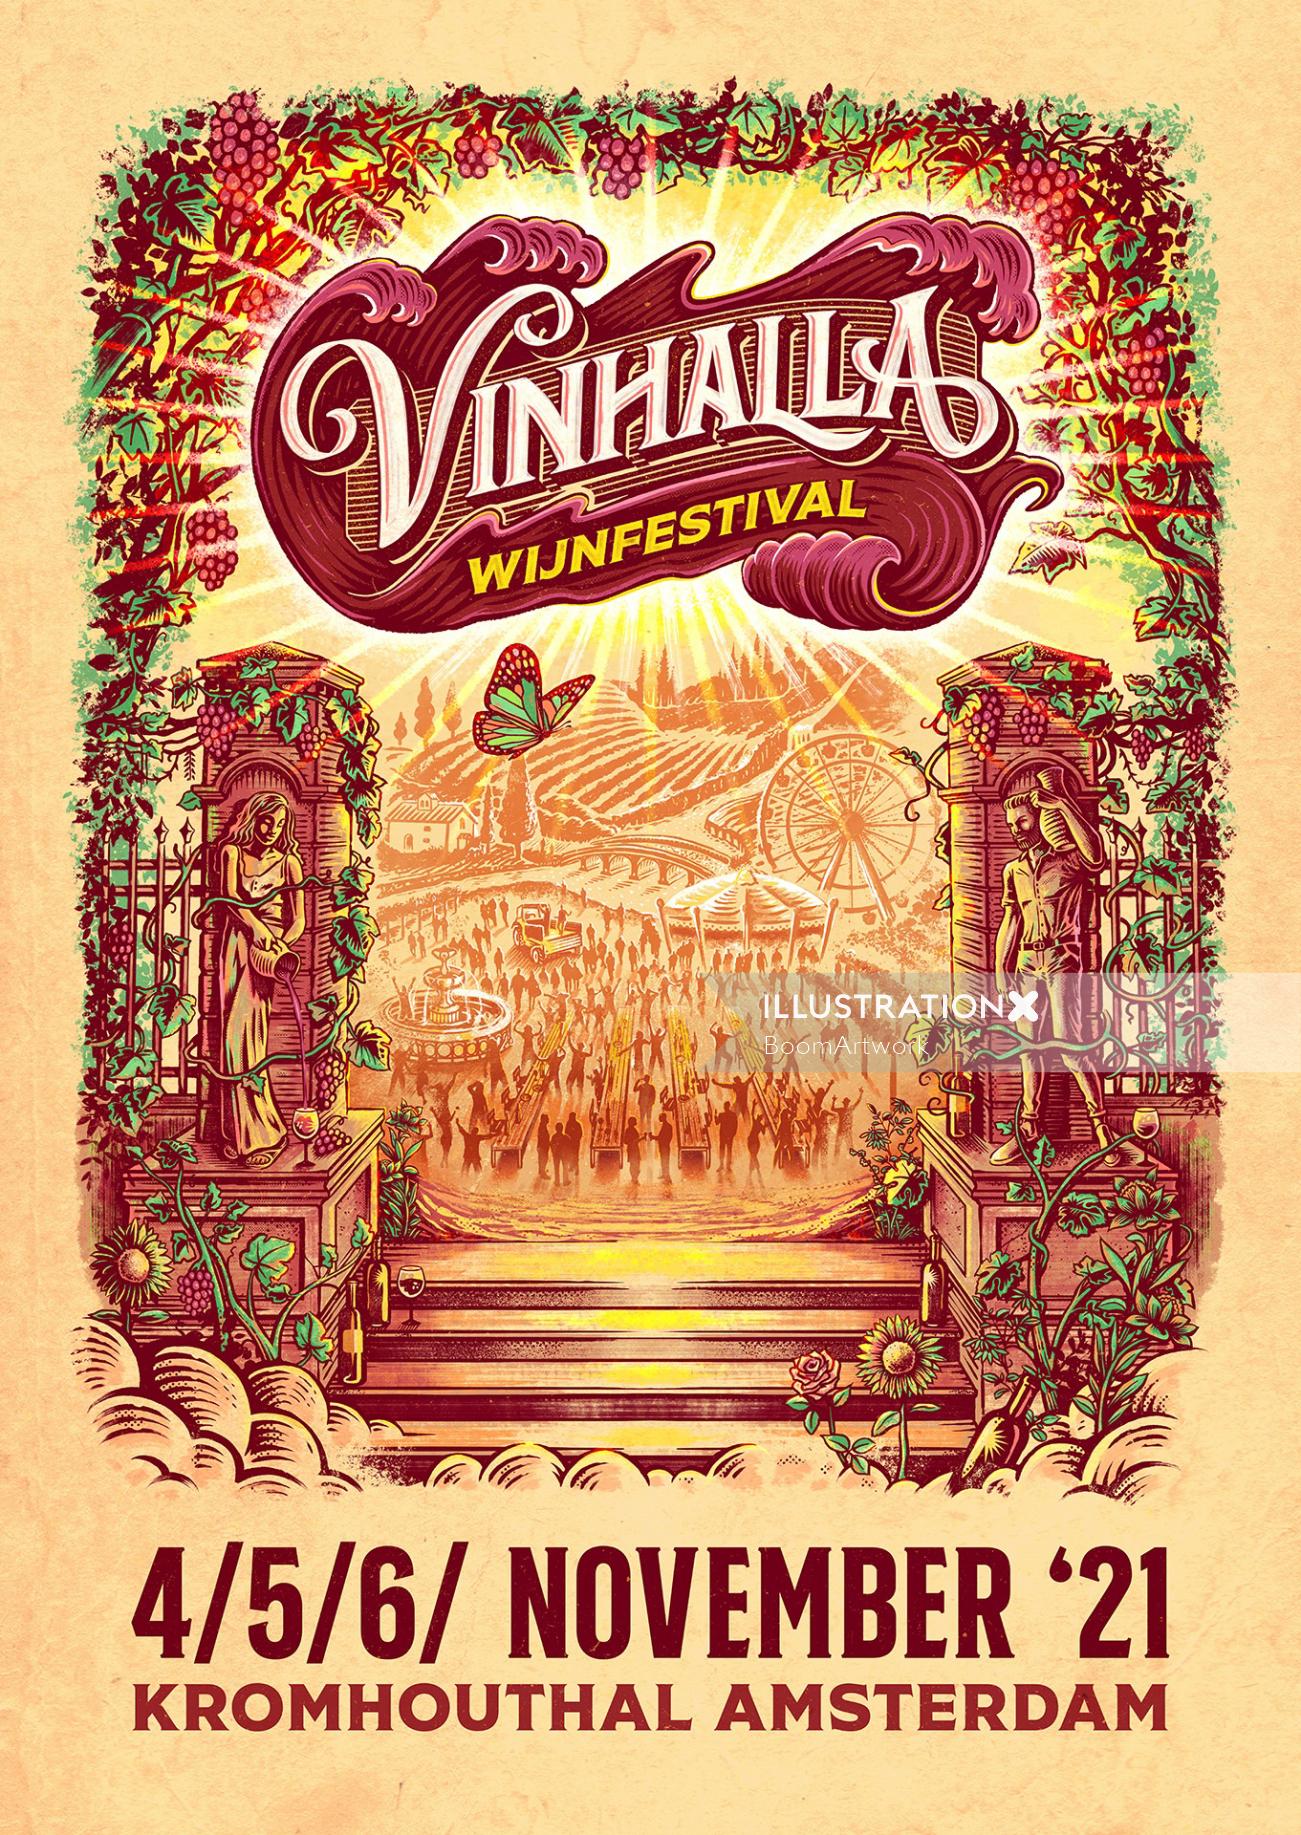 Ilustración de cartel para el festival del vino Vinhalla.